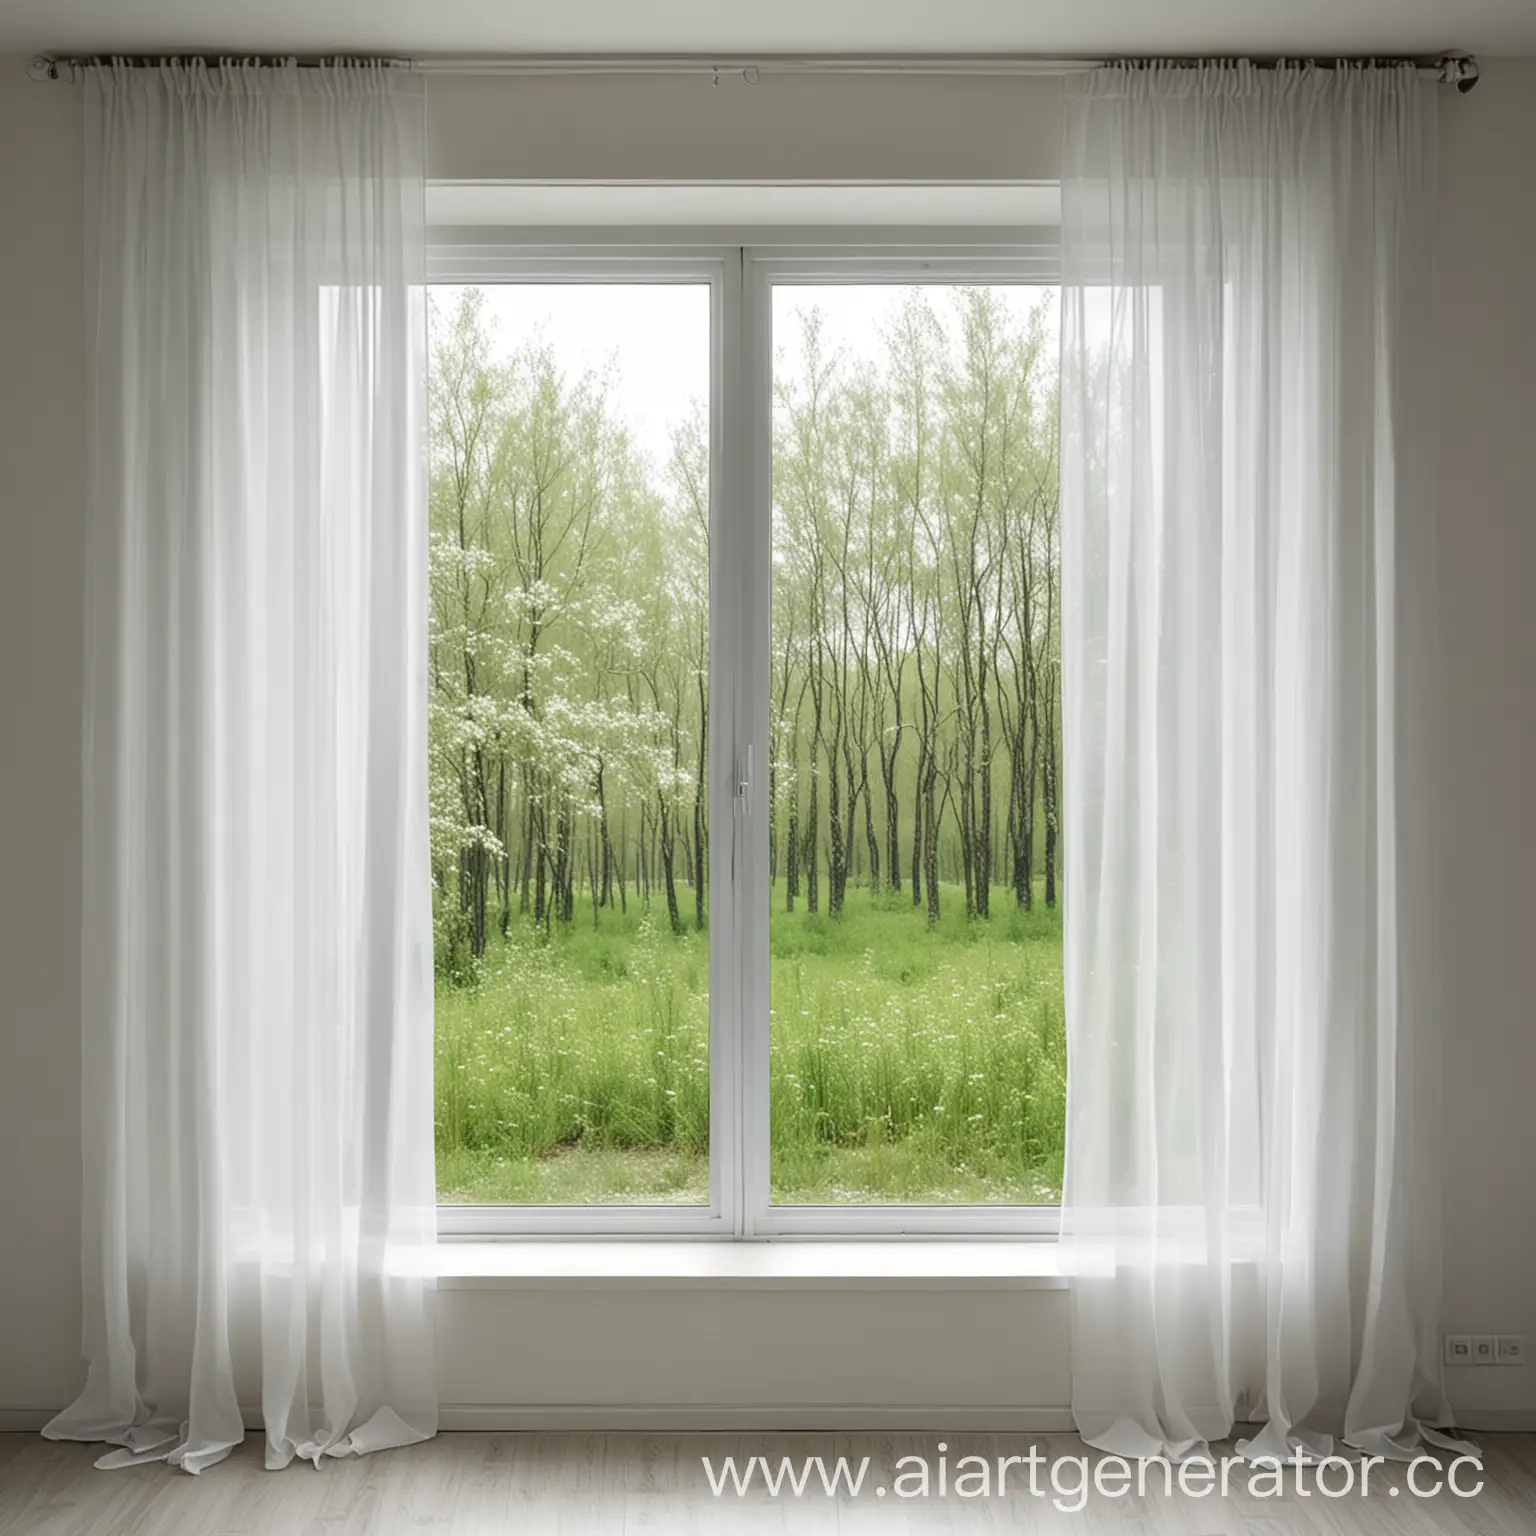 вид из окна на природу, белые шторы развиваются на ветру фото